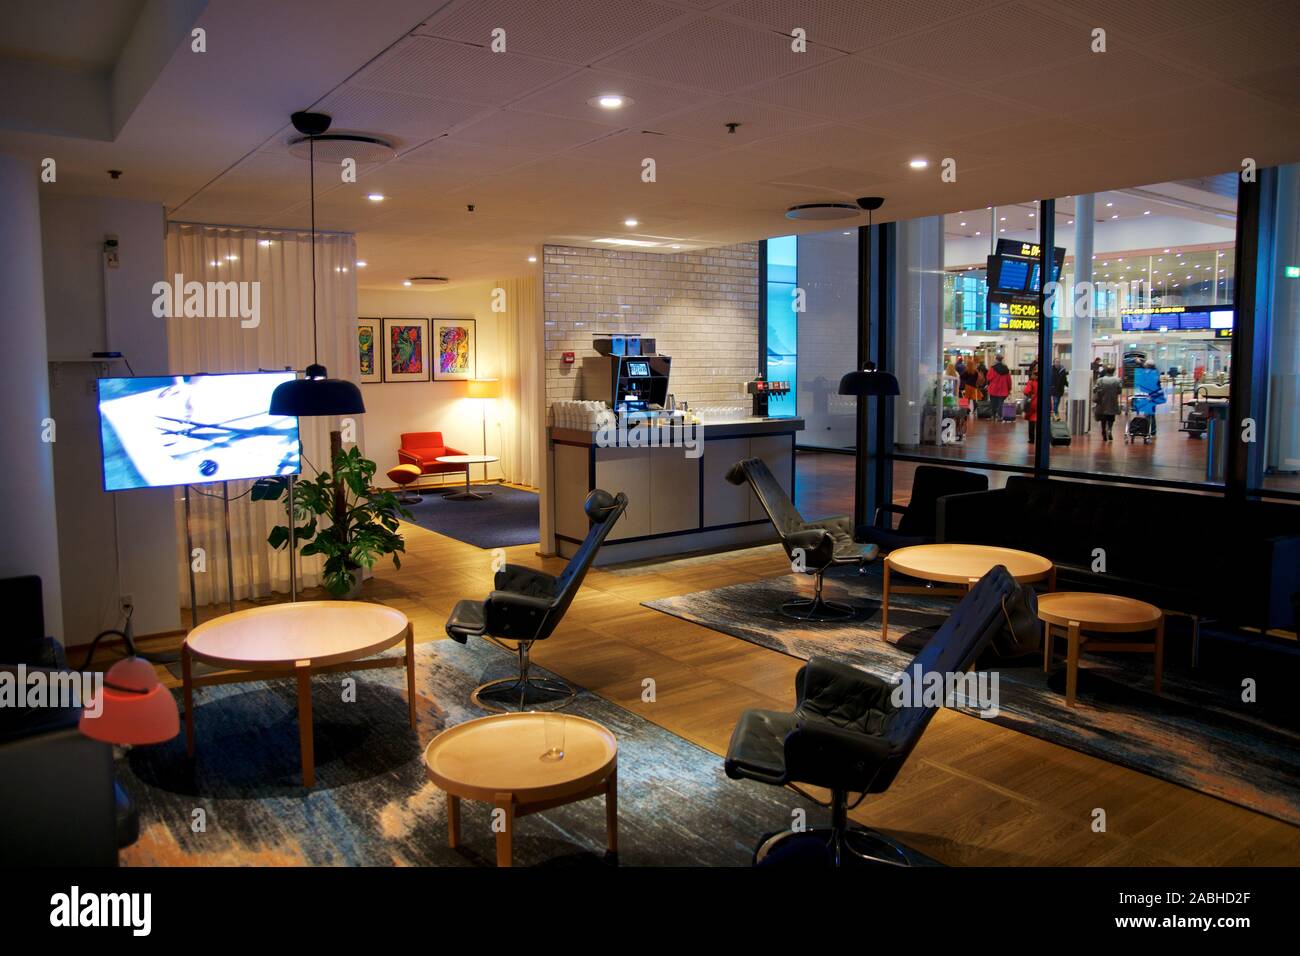 Kopenhagen, Dänemark - Nov 24th, 2018: Moderne lounge Interieur der SAS Business Lounge am Flughafen Kastrup mit kein Gast oder Personen Stockfoto